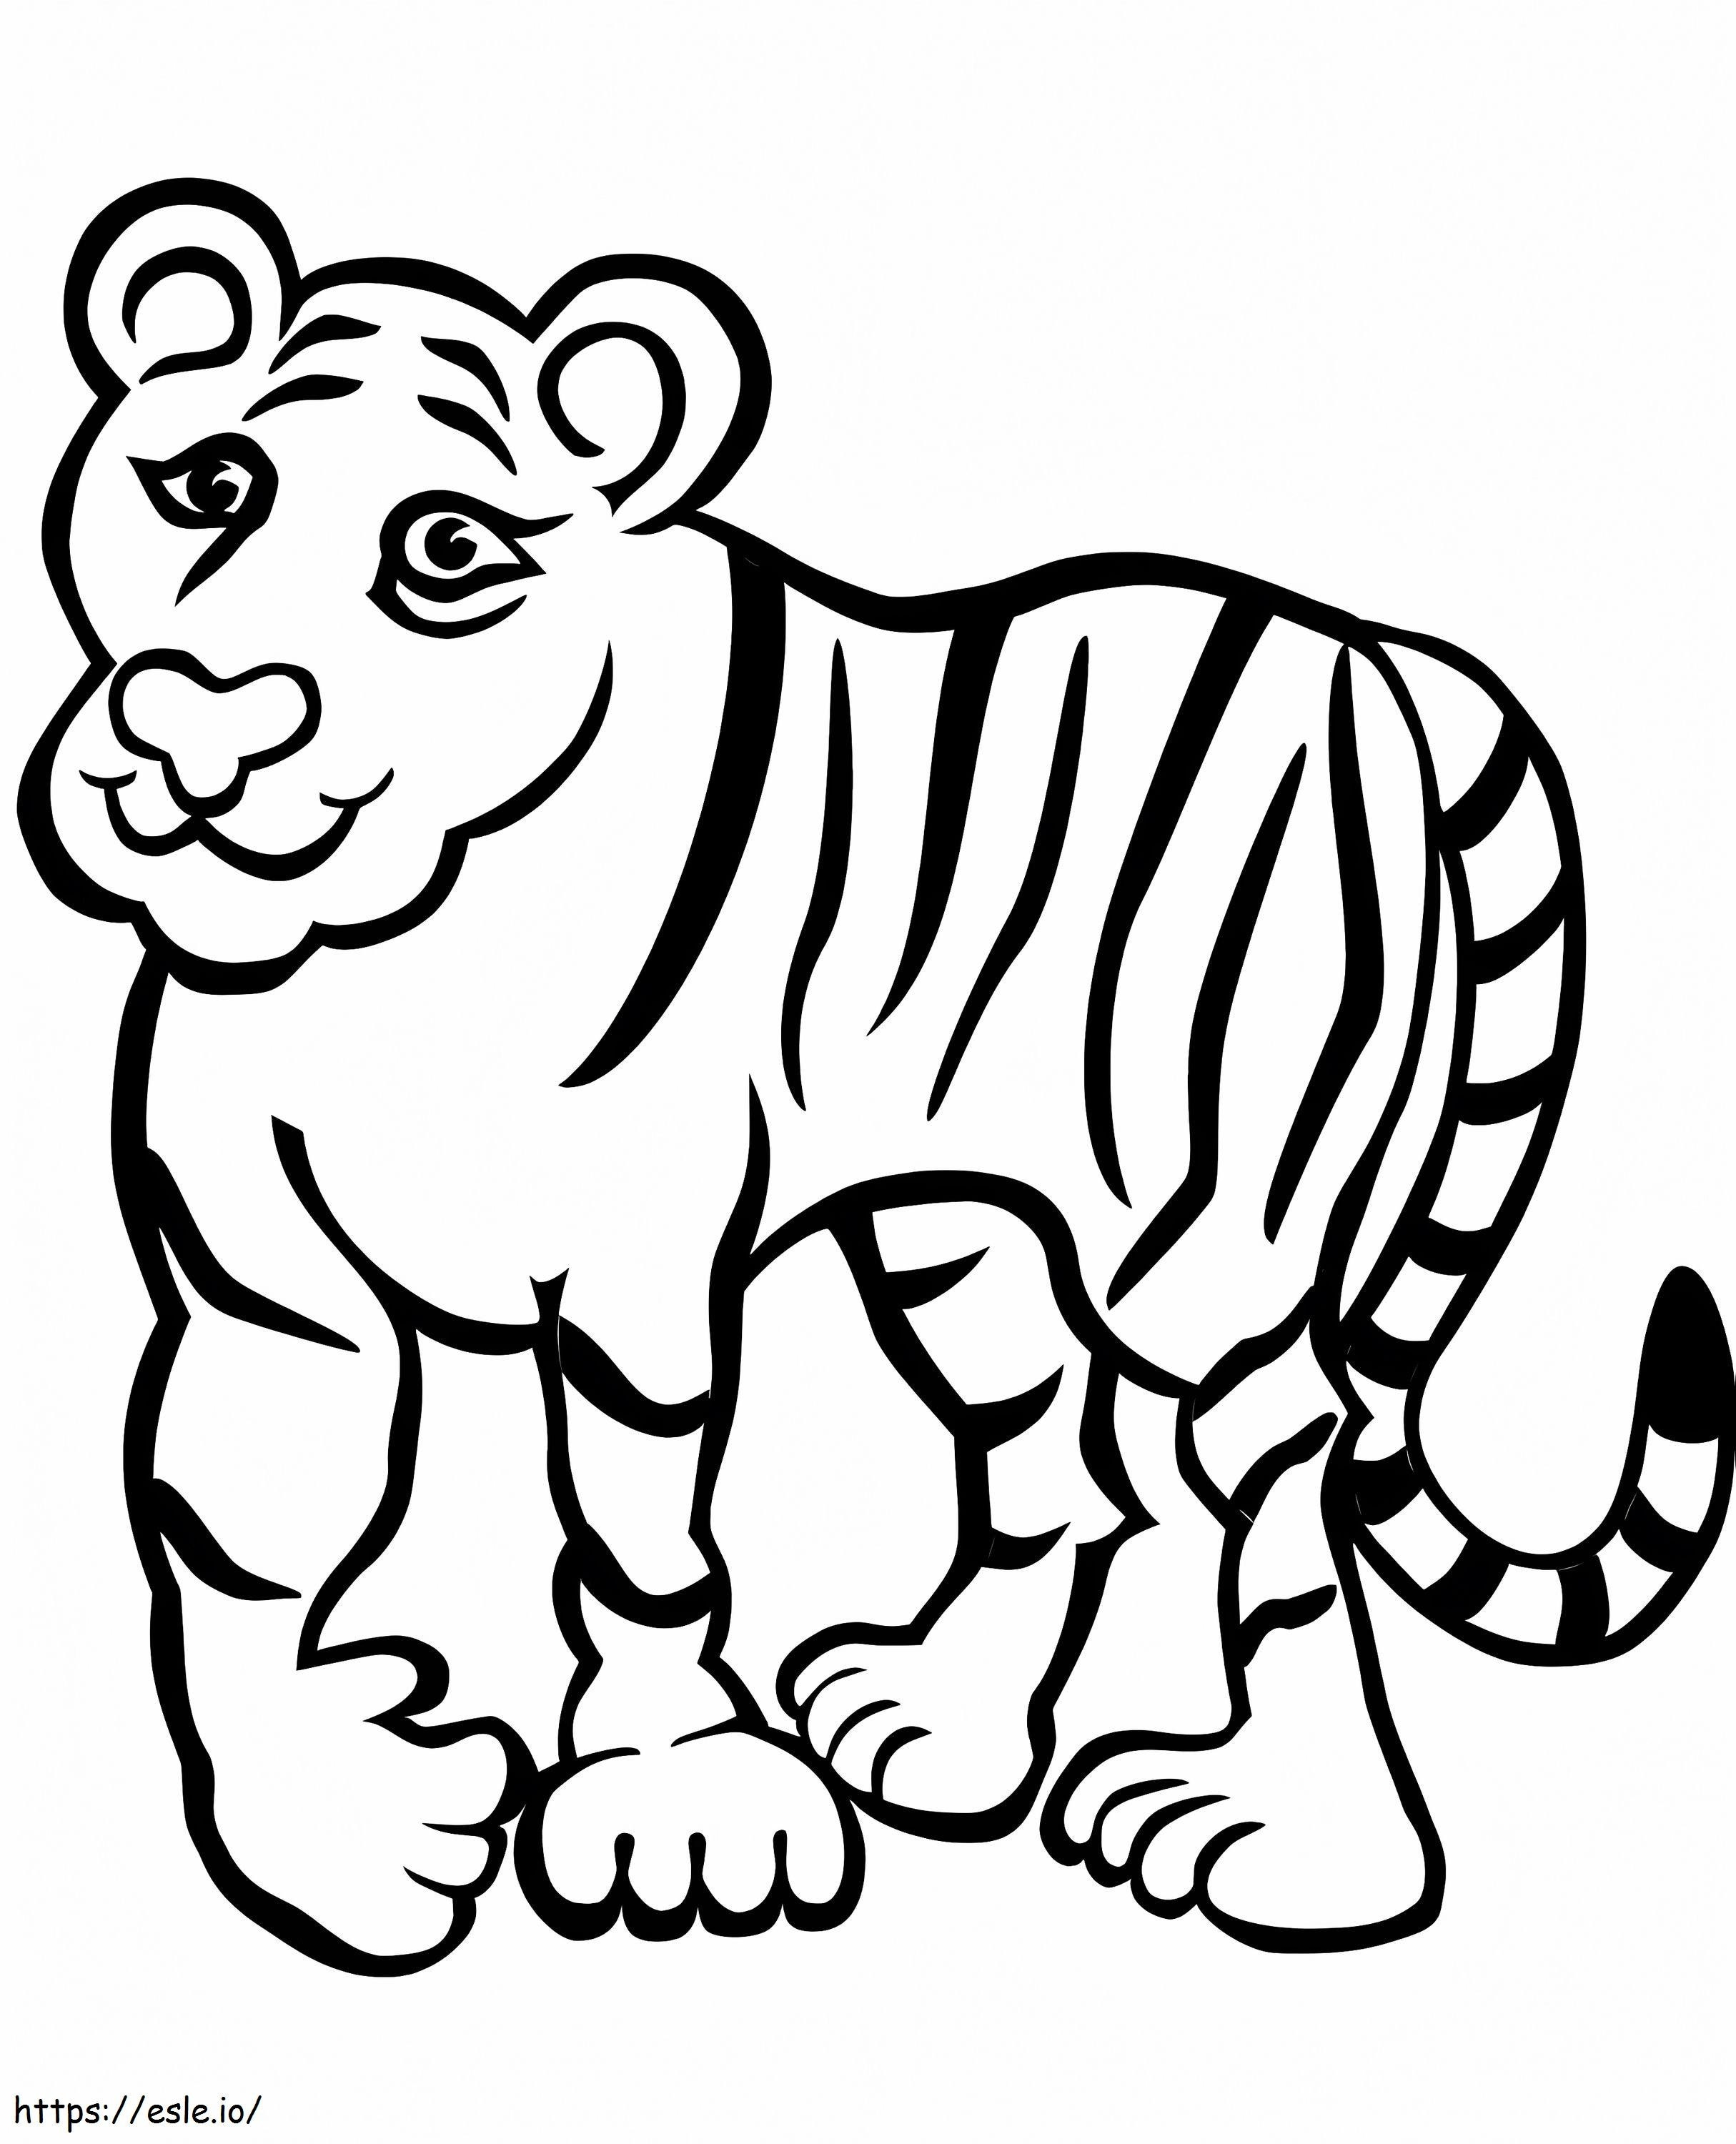 Śmieszny Tygrys kolorowanka